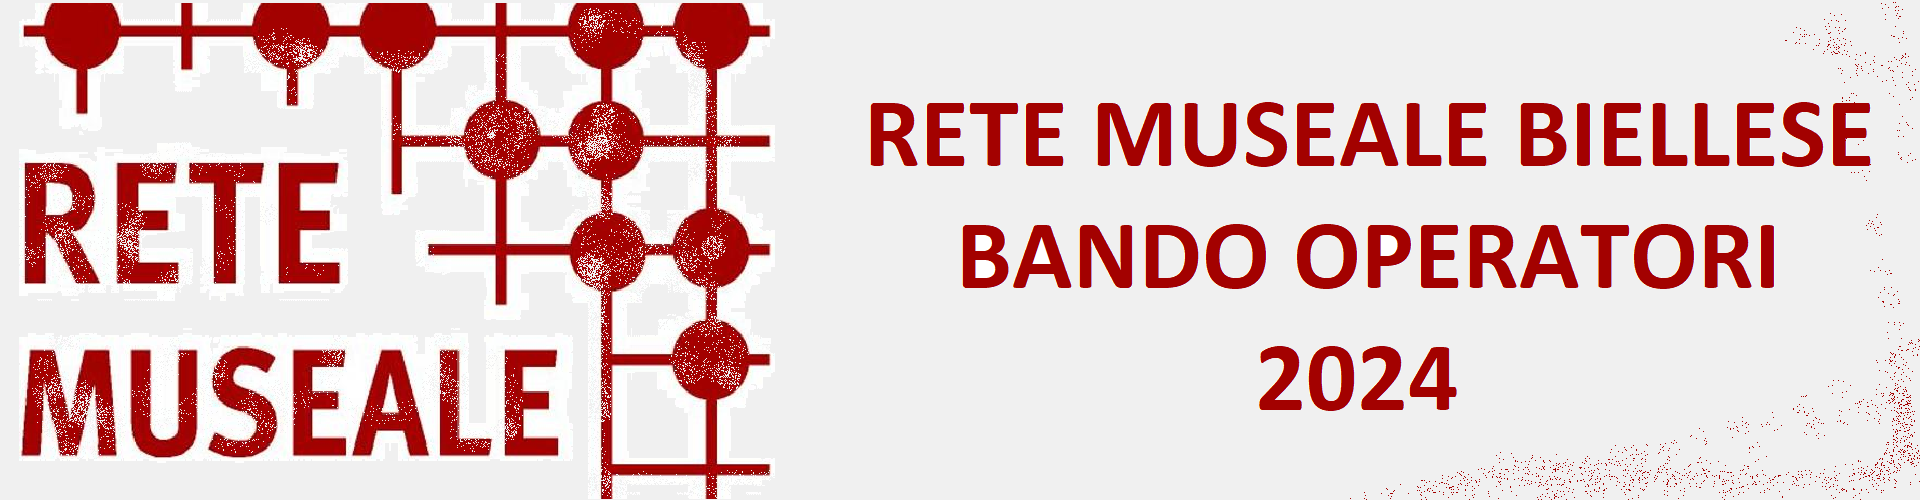 Rete Museale - Bando operatori